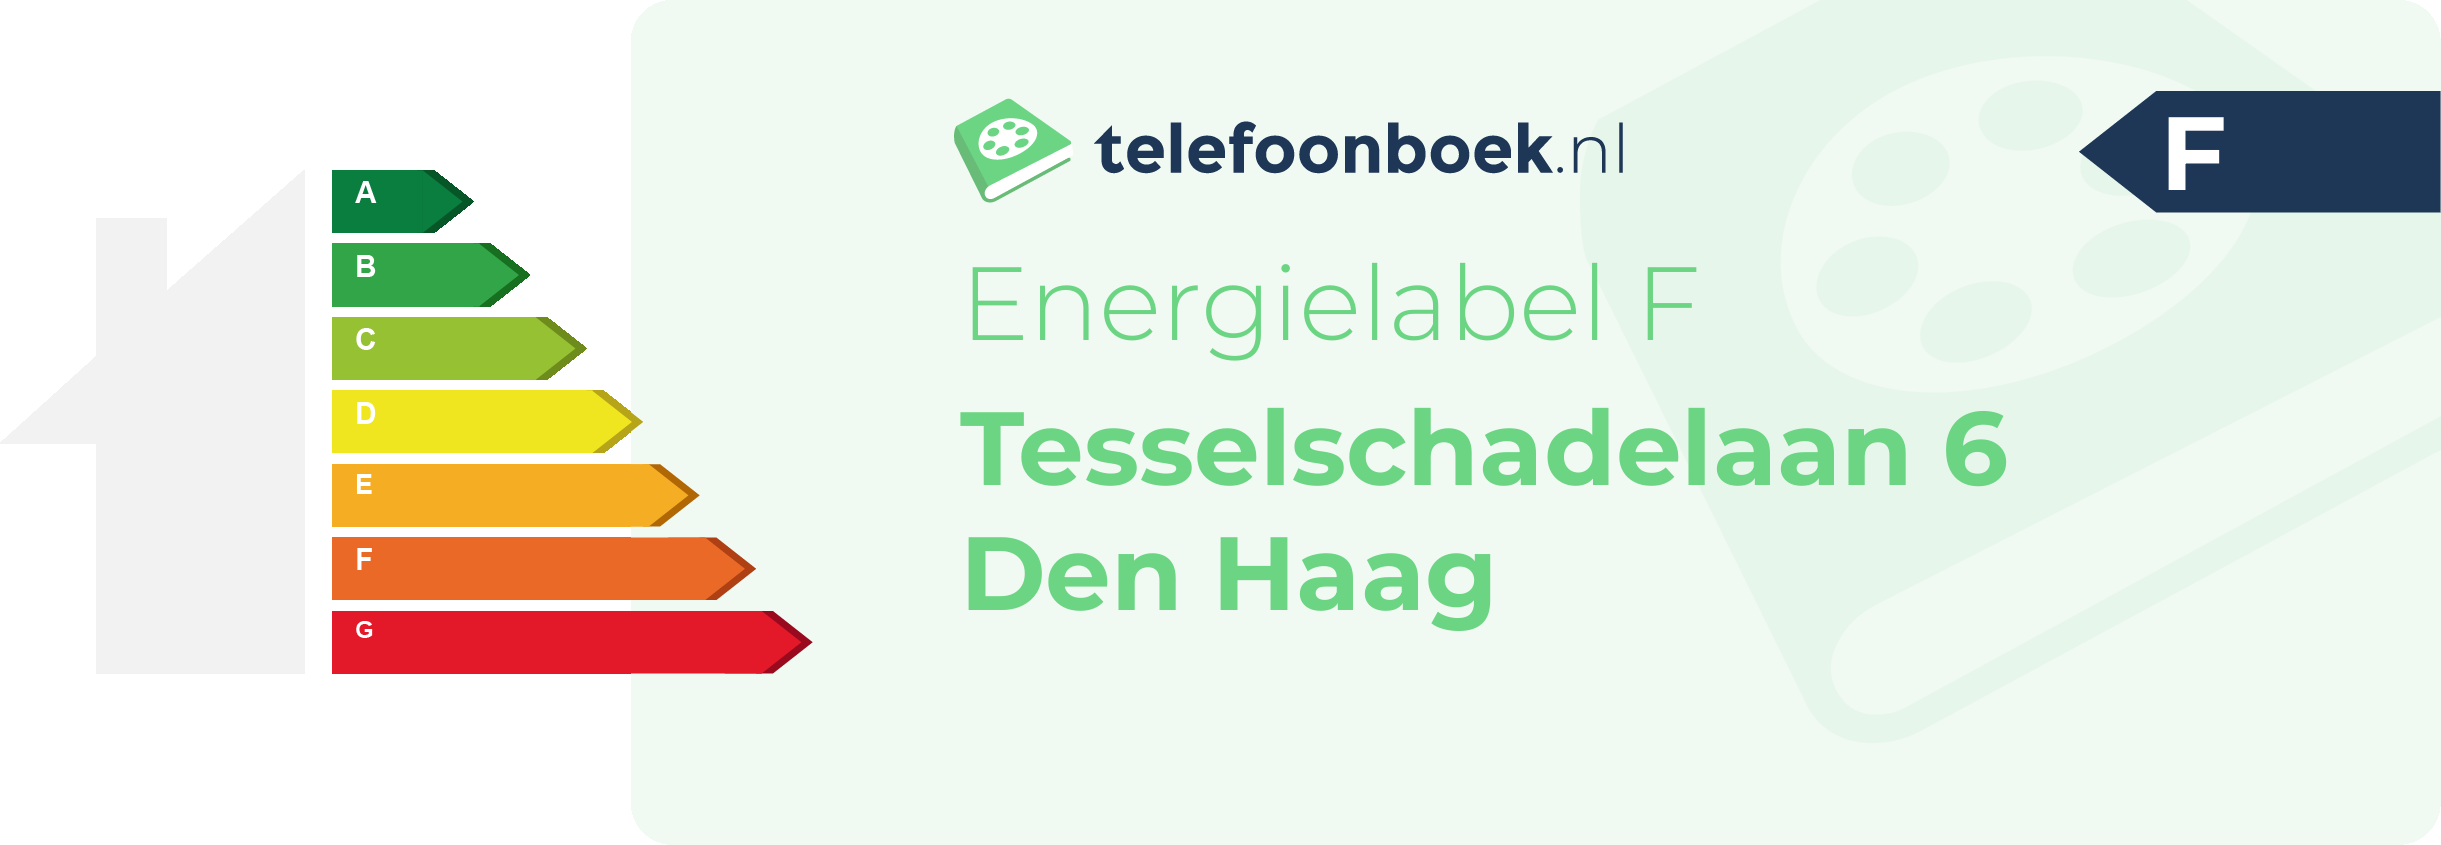 Energielabel Tesselschadelaan 6 Den Haag